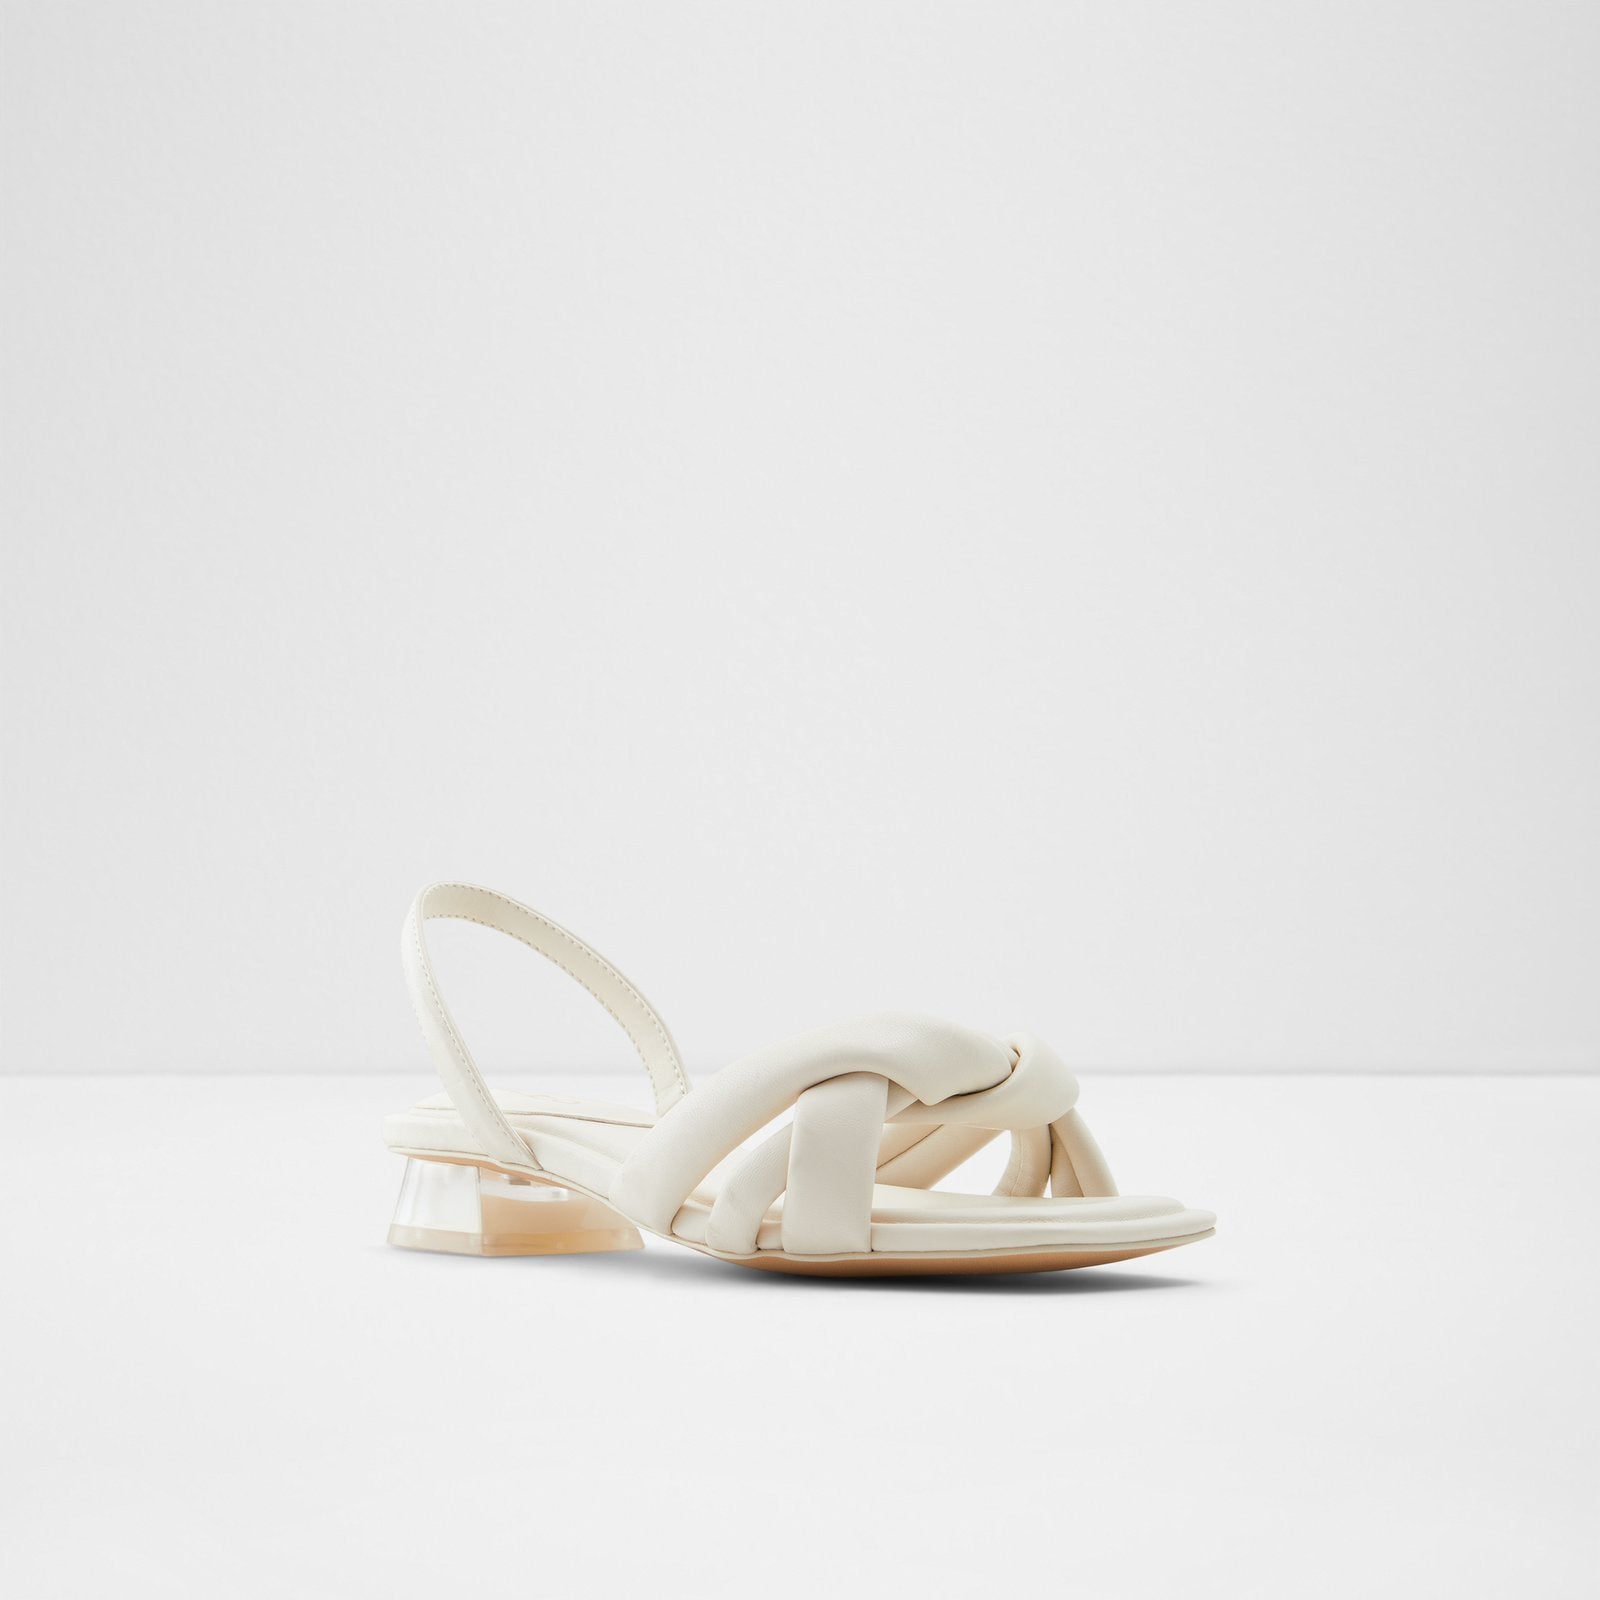 Buttercupp Women Shoes - White - ALDO KSA